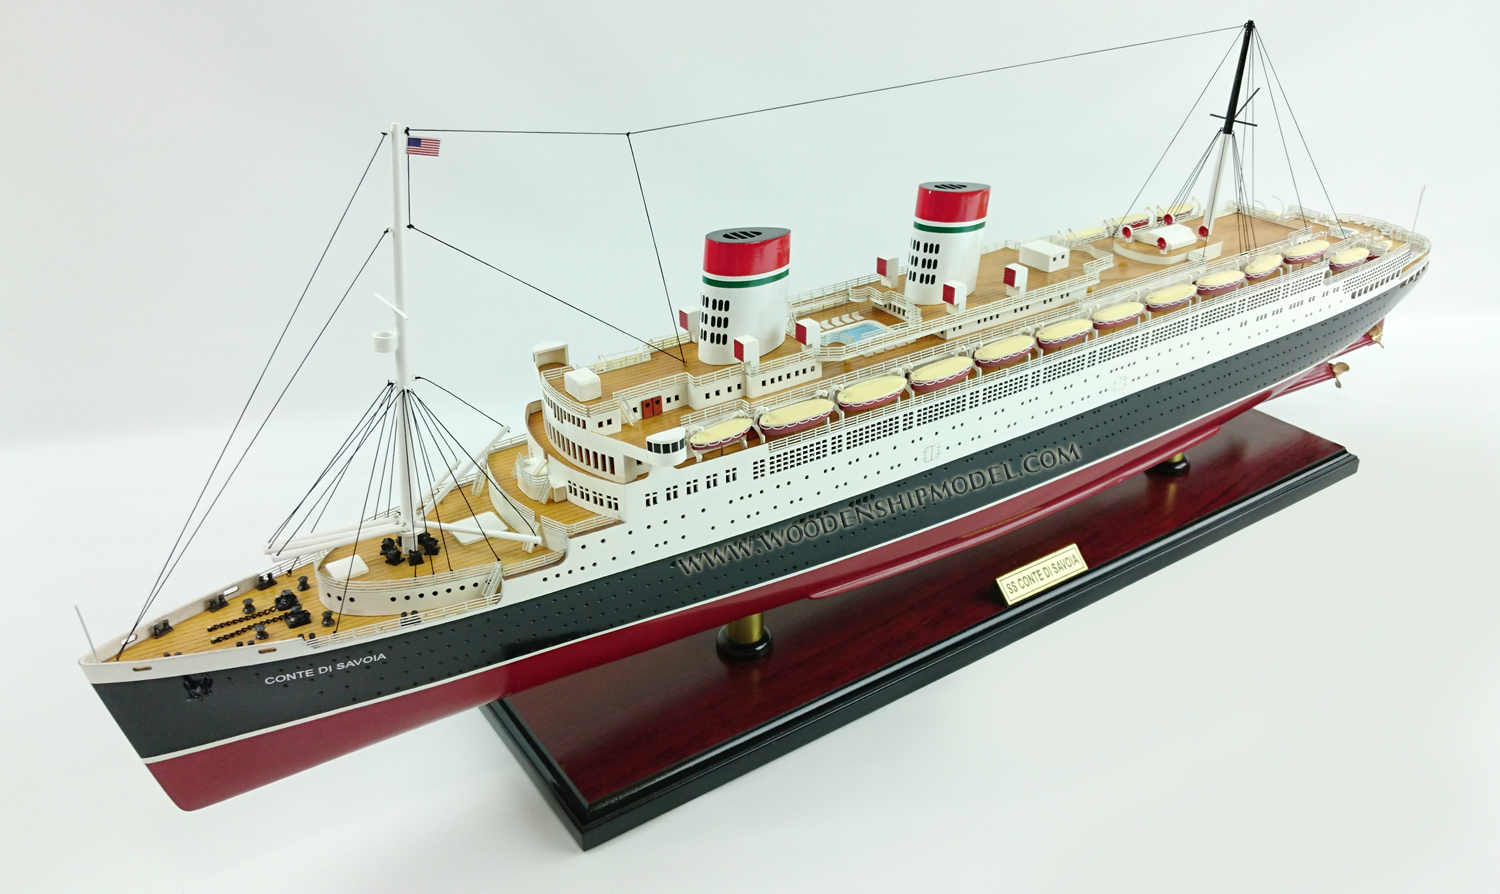 Cruise ship model SS Conte di Savoia